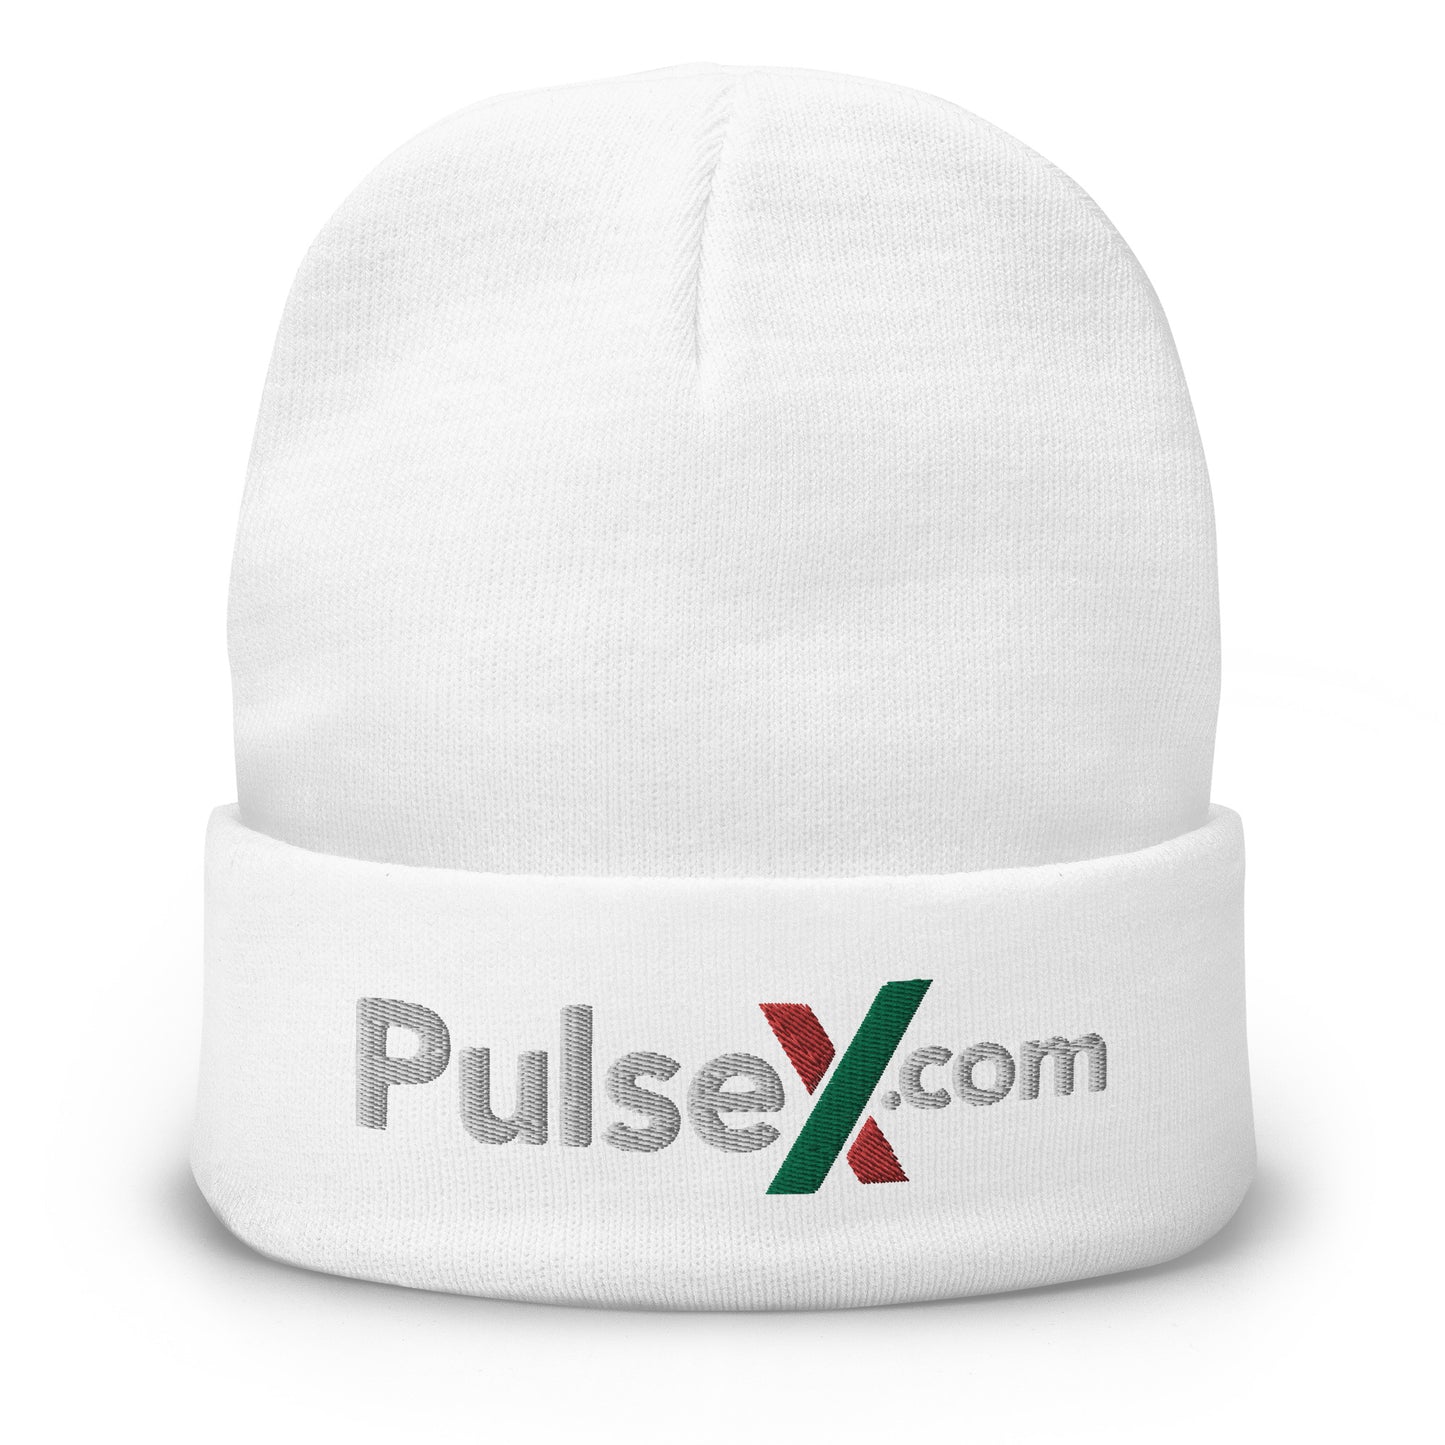 PulseX.com Beanie